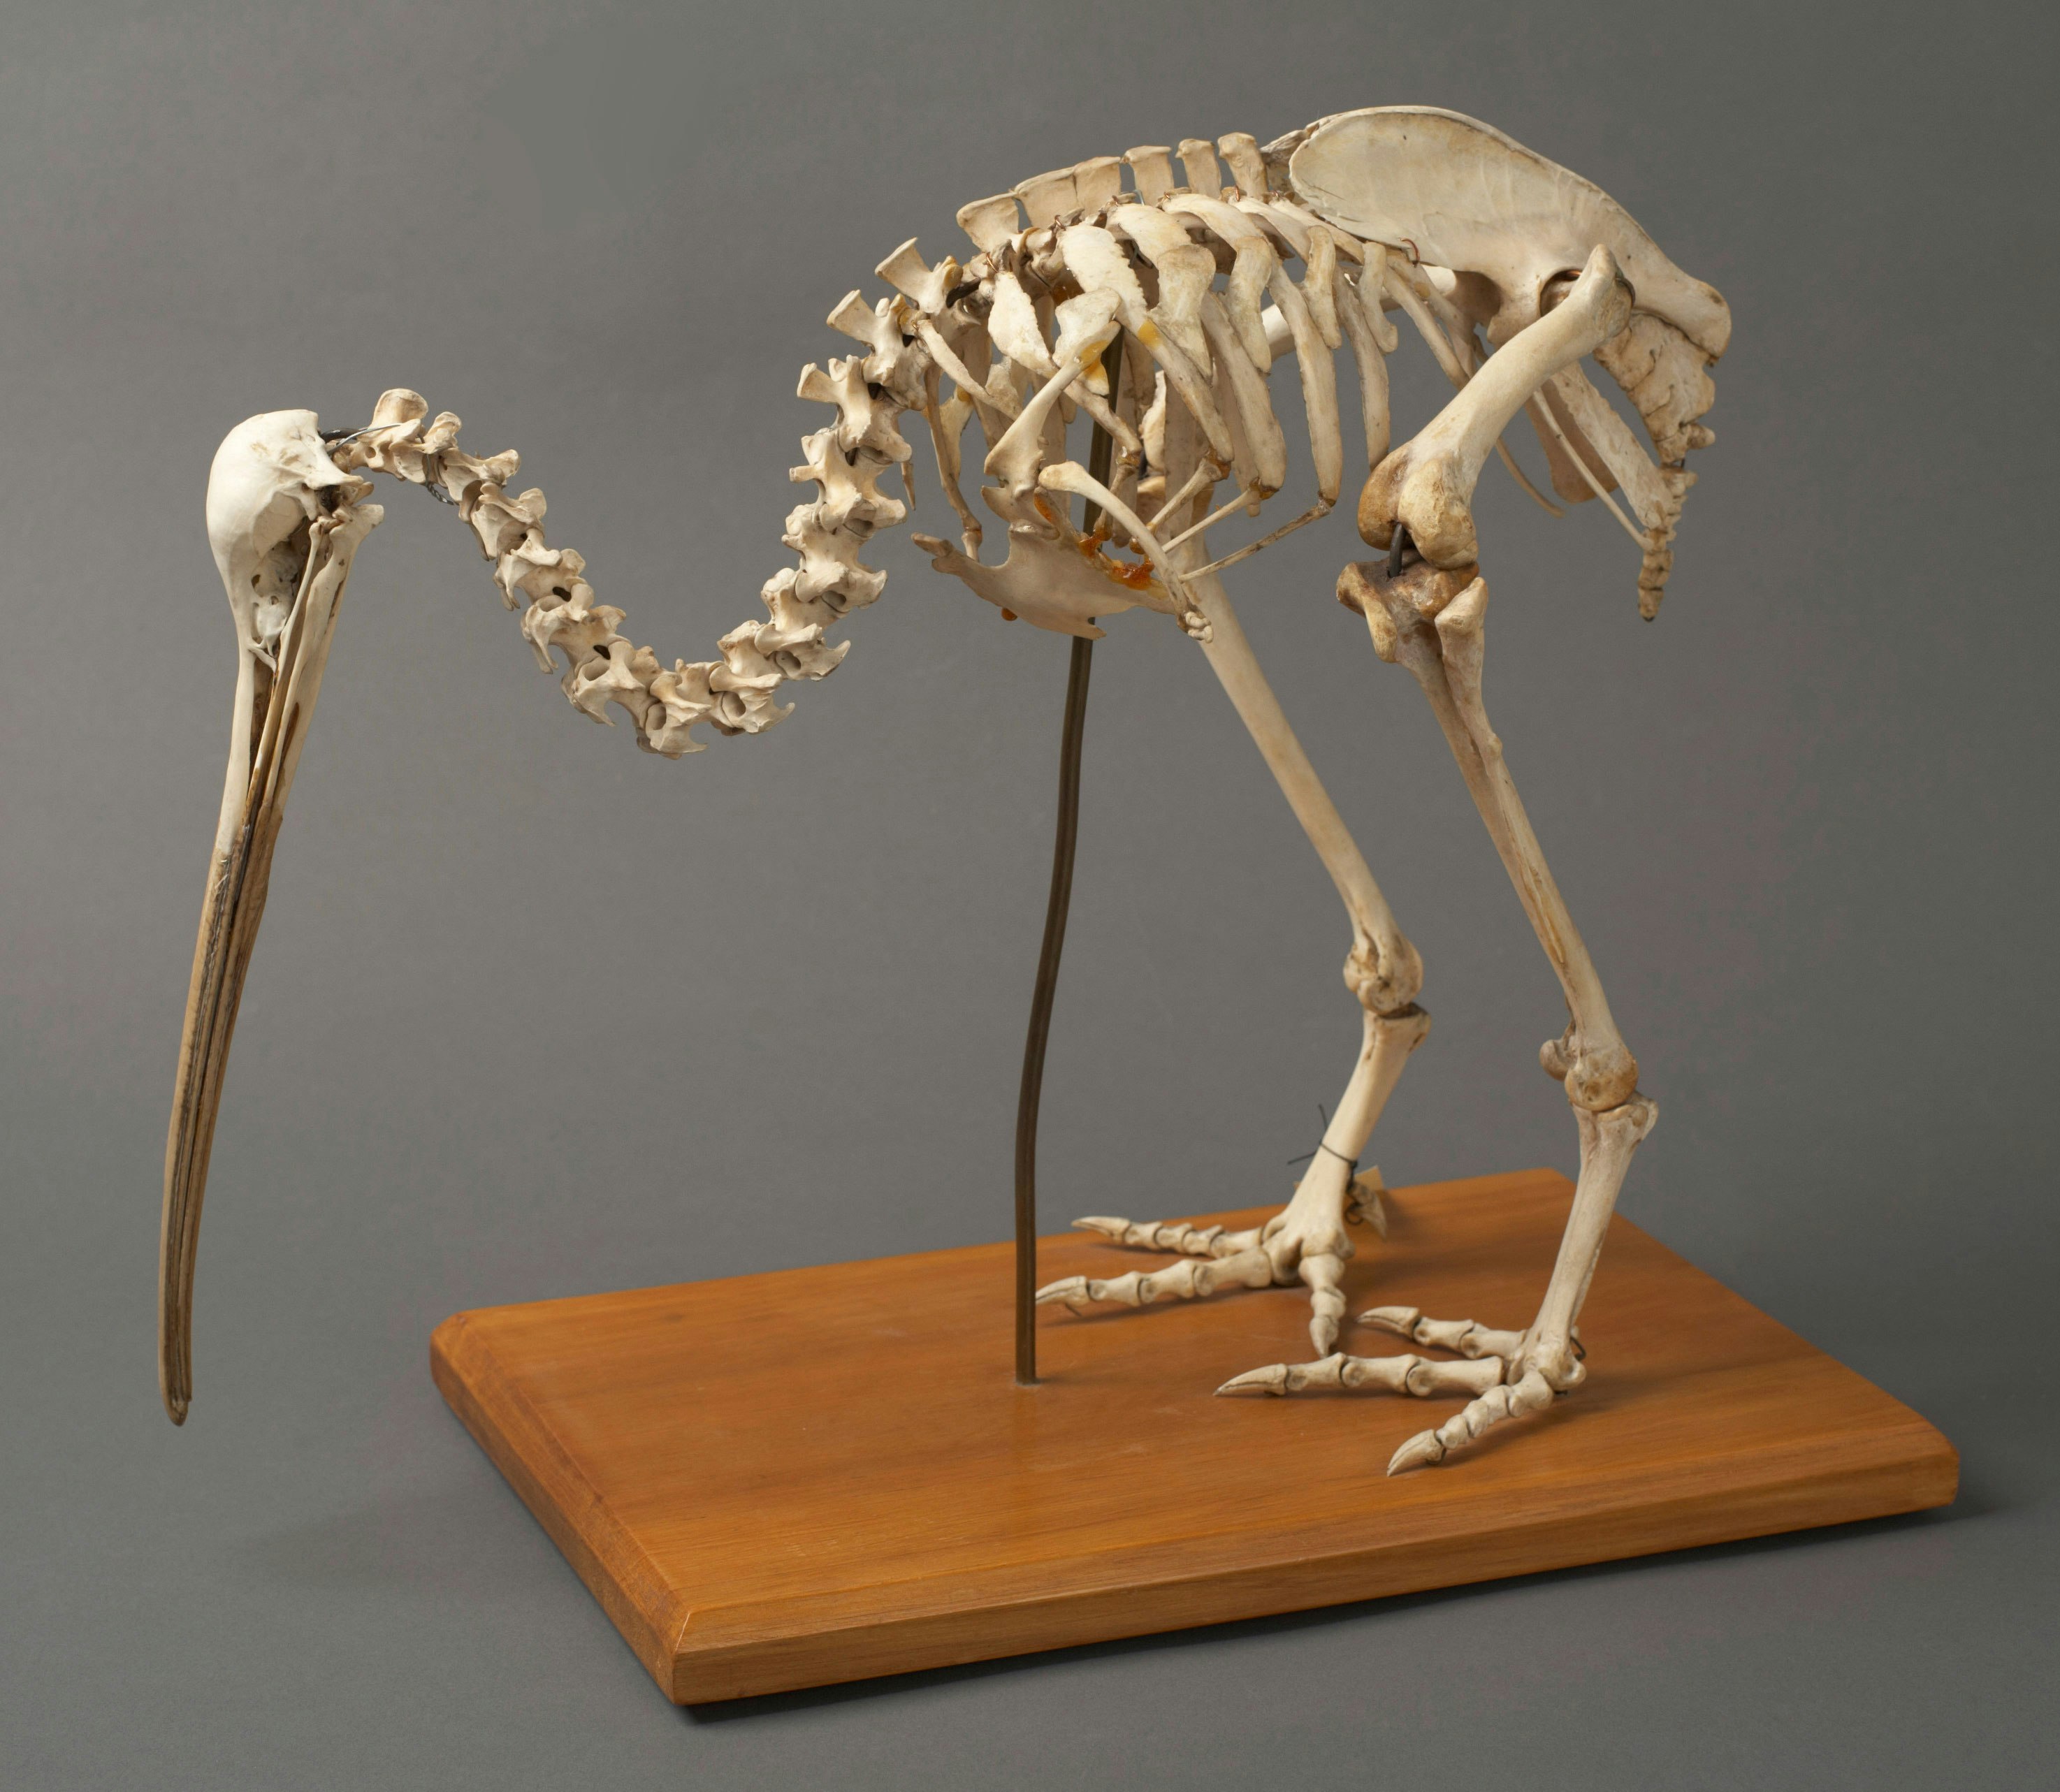 Skeleton of a kiwi bird